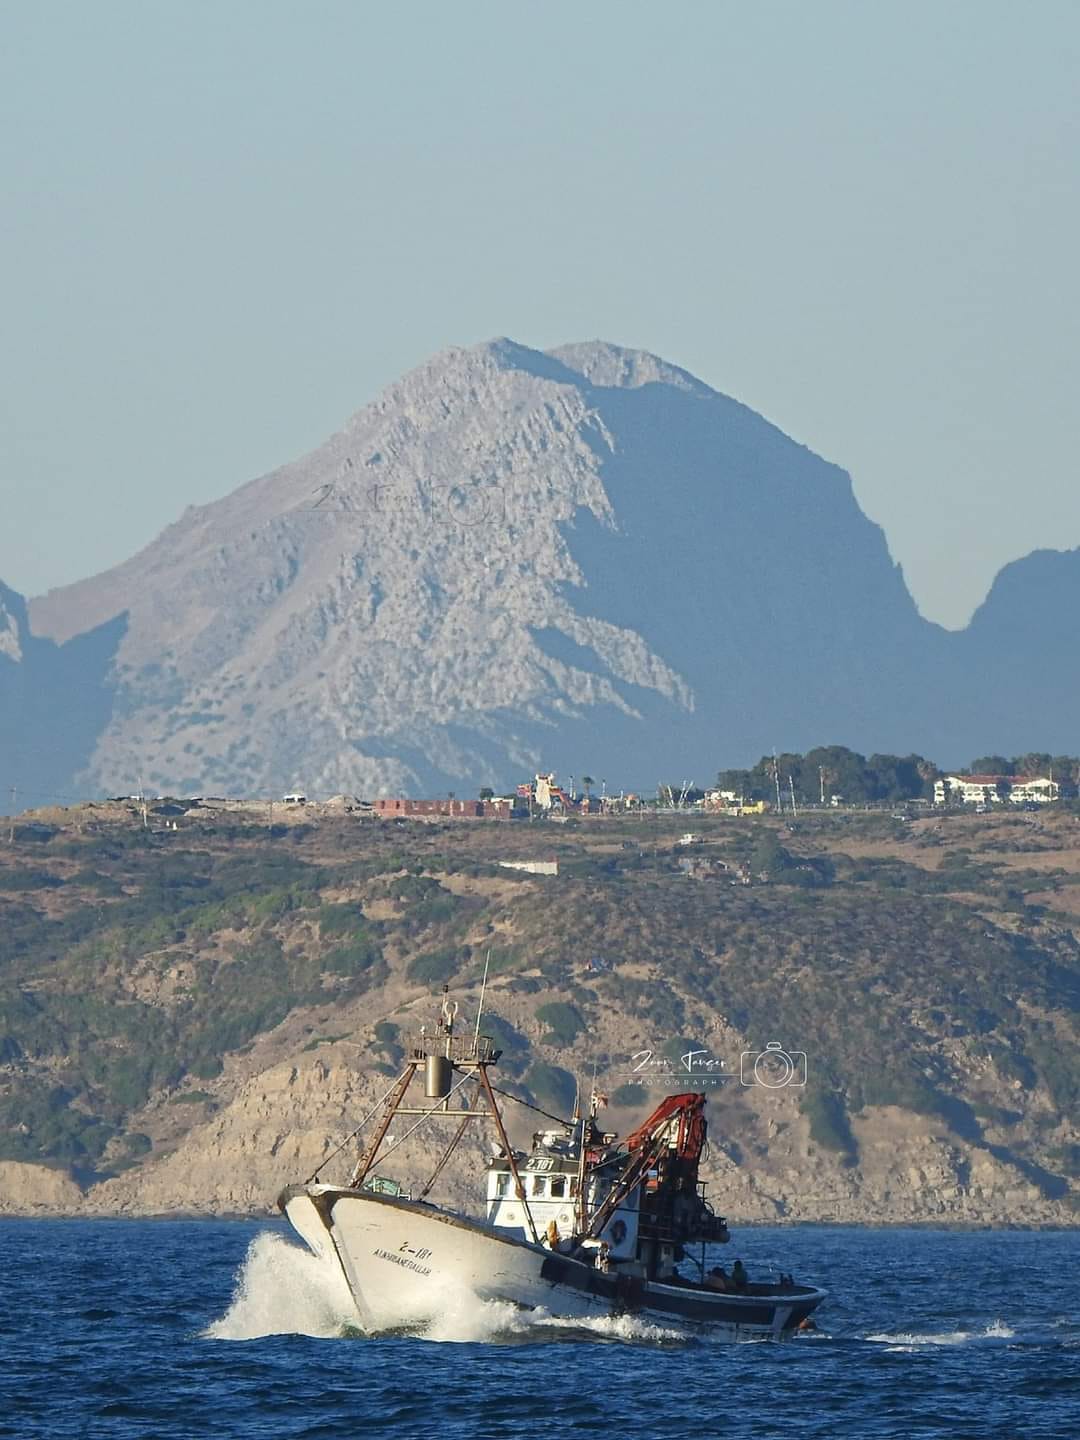 ربع البحراويين ويظهر جبل موسى في أعلى الصورة. إقليم الفحص أنجرة